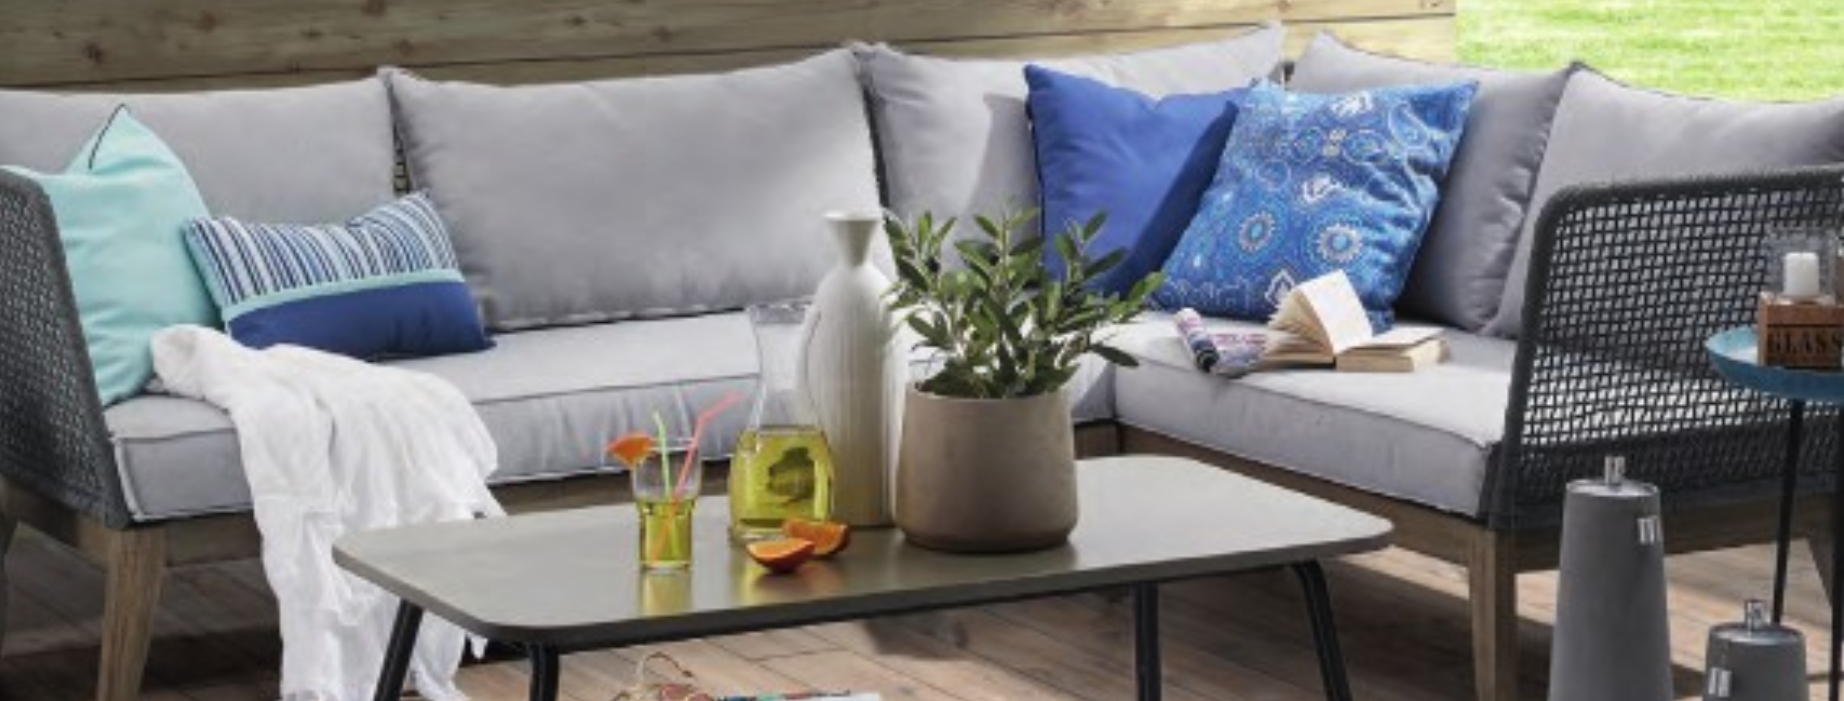 Los muebles que no pueden faltar este verano en tu terraza o jardín imagen